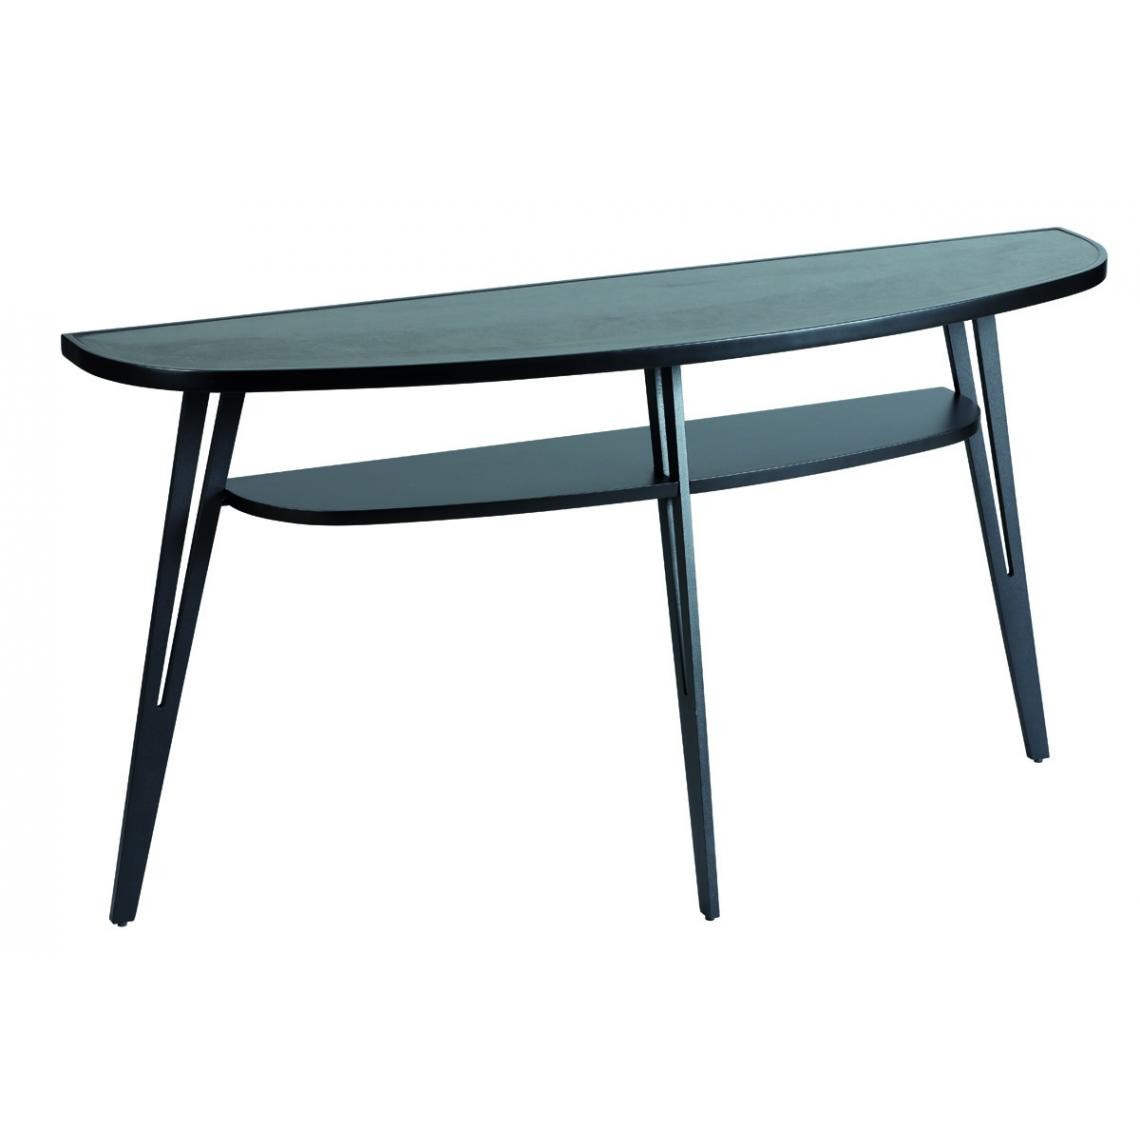 Pegane - Table console en MDF / céramique coloris noir - Longueur 140 x profondeur 35 x hauteur 75 cm - Consoles